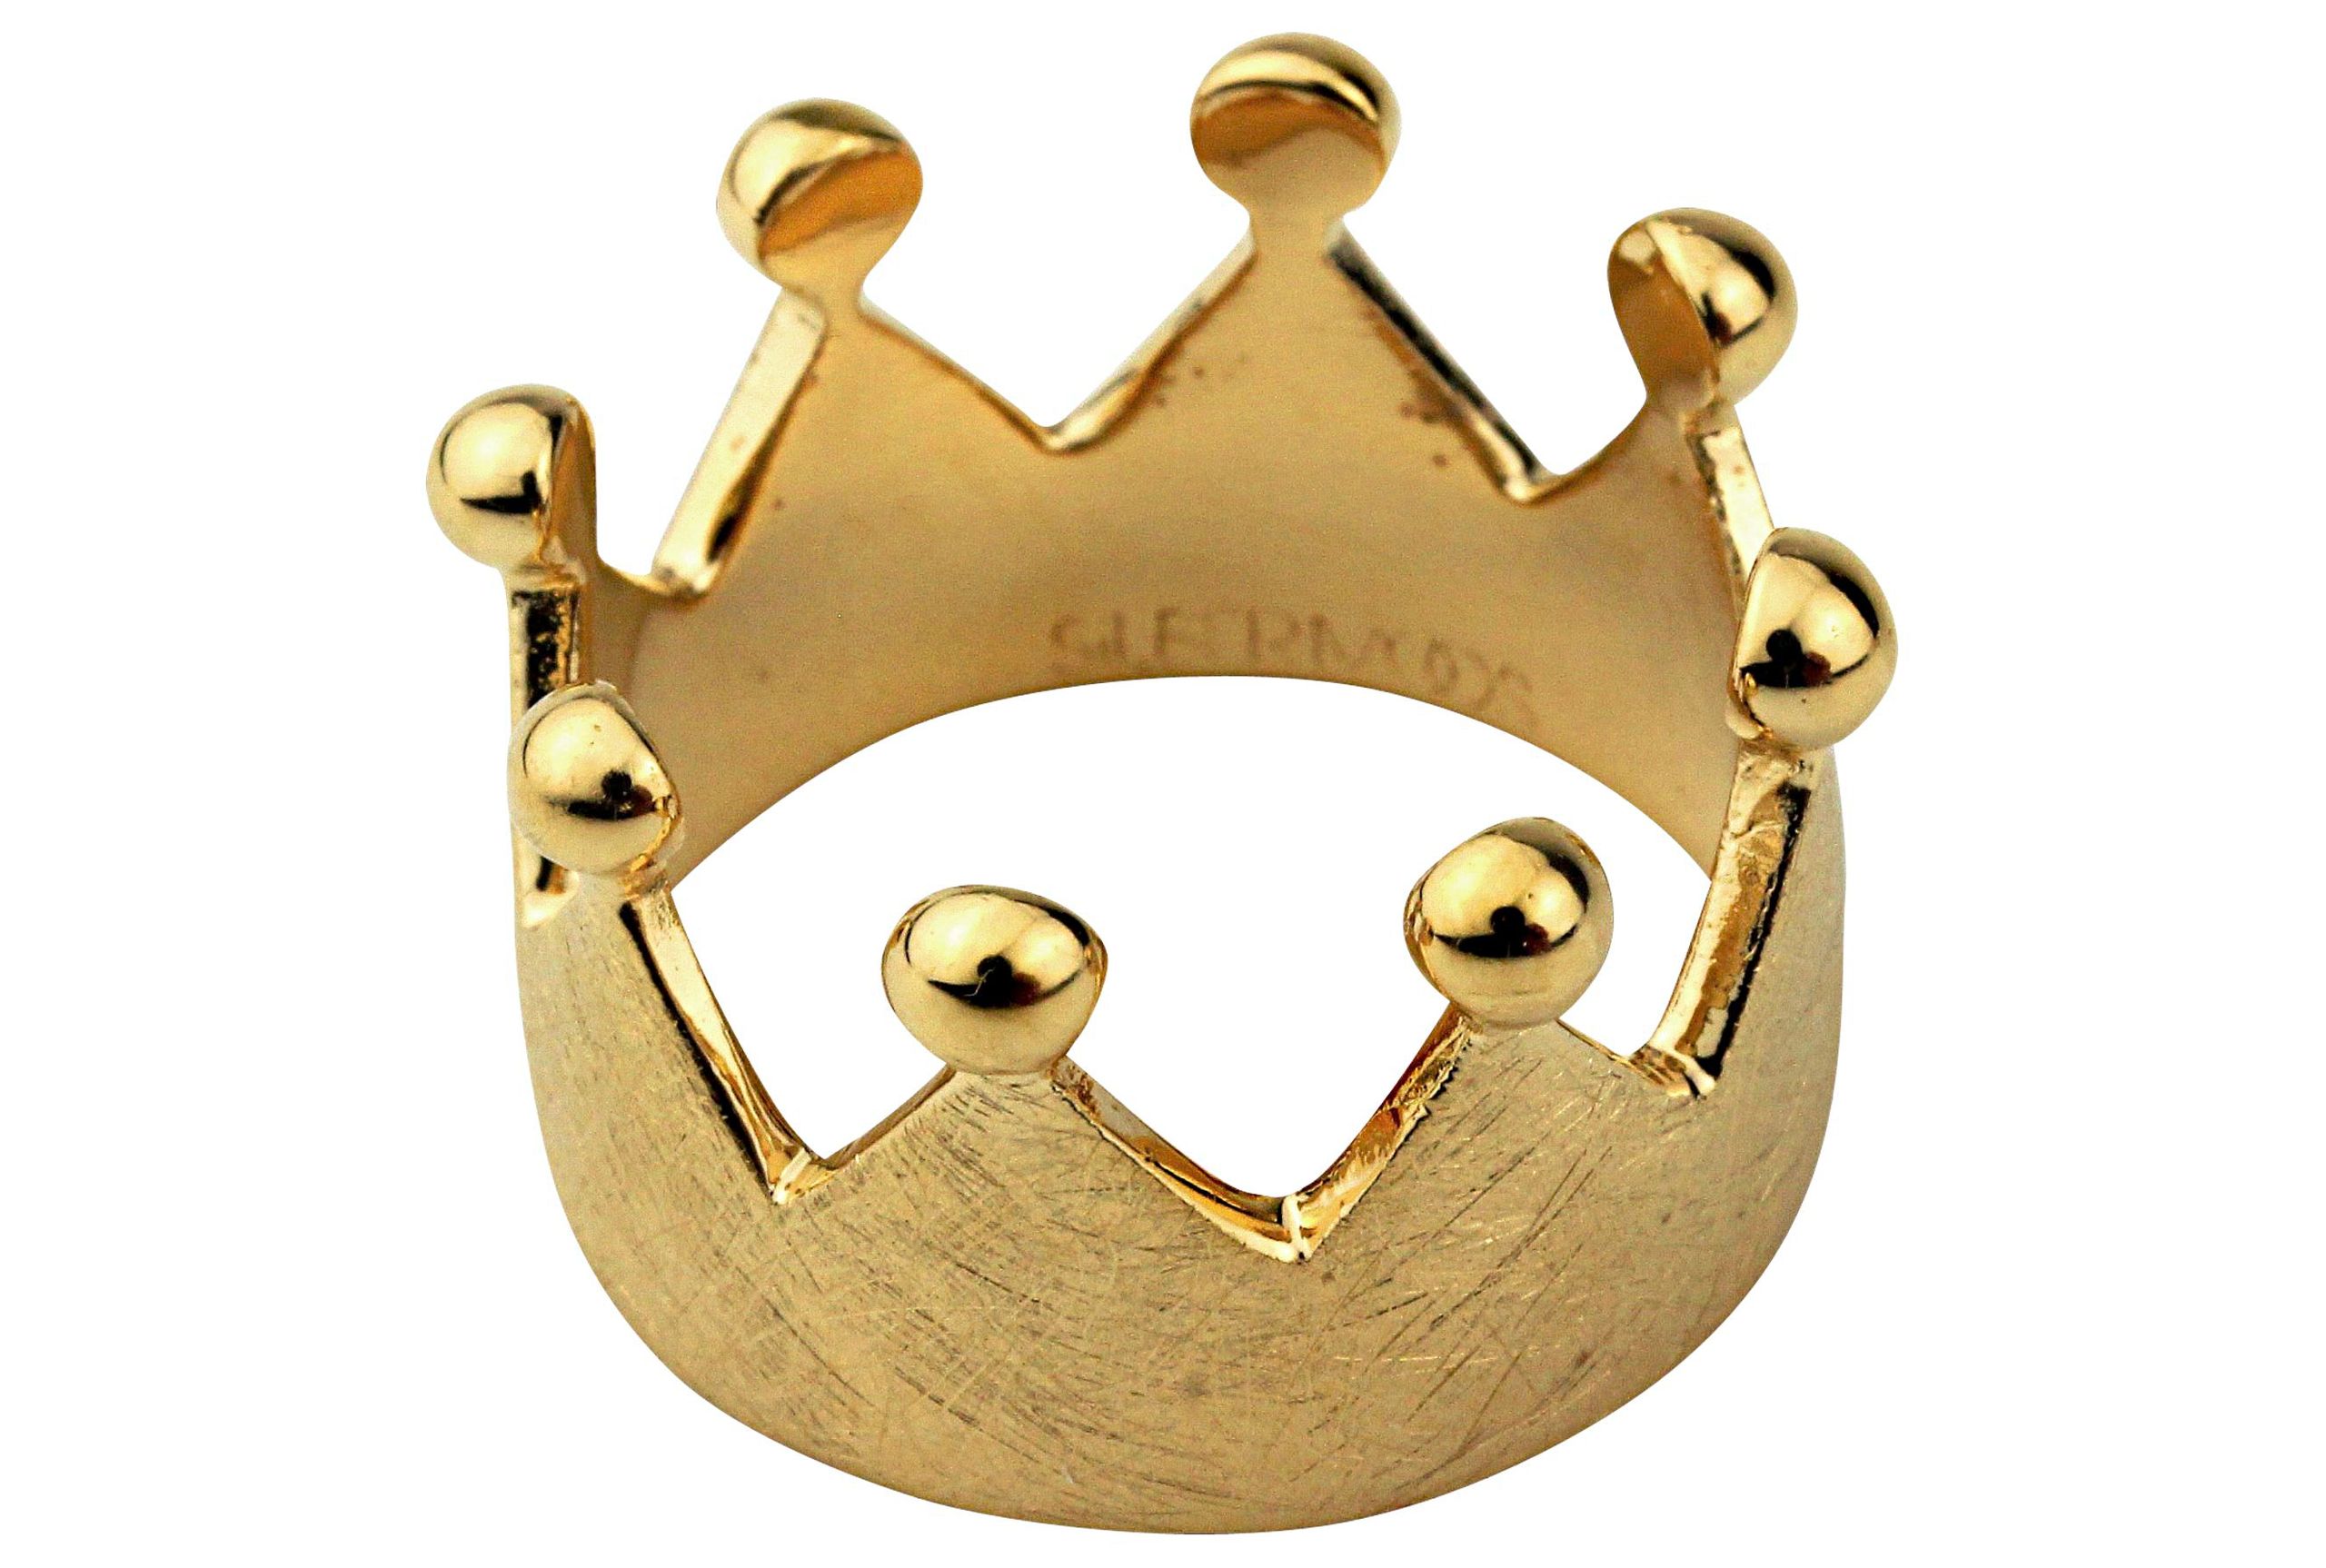 Ein Kronenring mit acht Zacken und acht Kügelchen an der Spitze, gefertigt aus Silber und mit Gold plattiert.